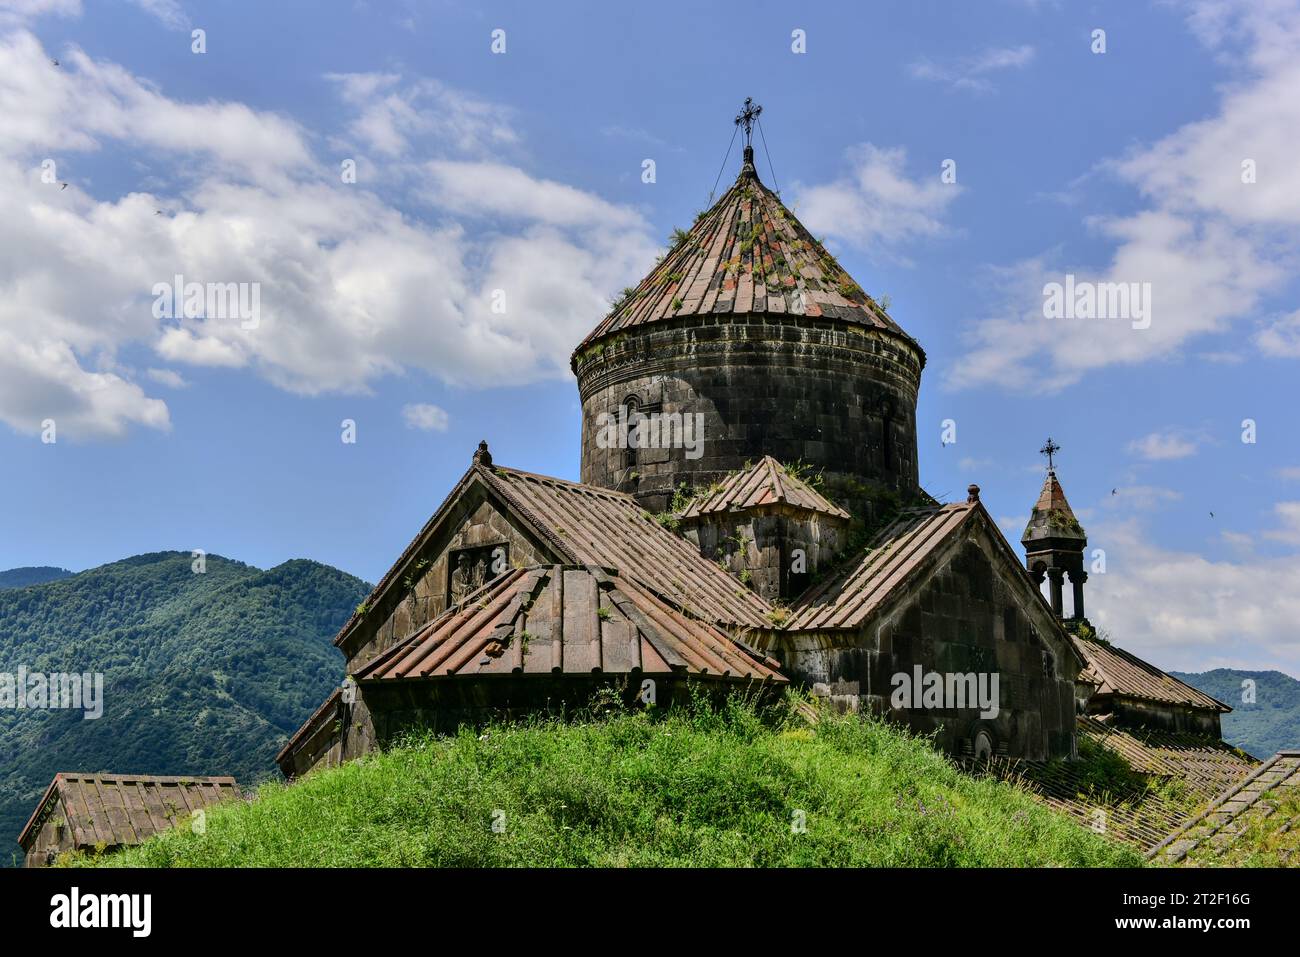 Monasterio Haghpat, también conocido como Haghpatavank, un complejo de monasterios medievales en Haghpat, Armenia, construido entre los siglos X y XIII. Foto de stock